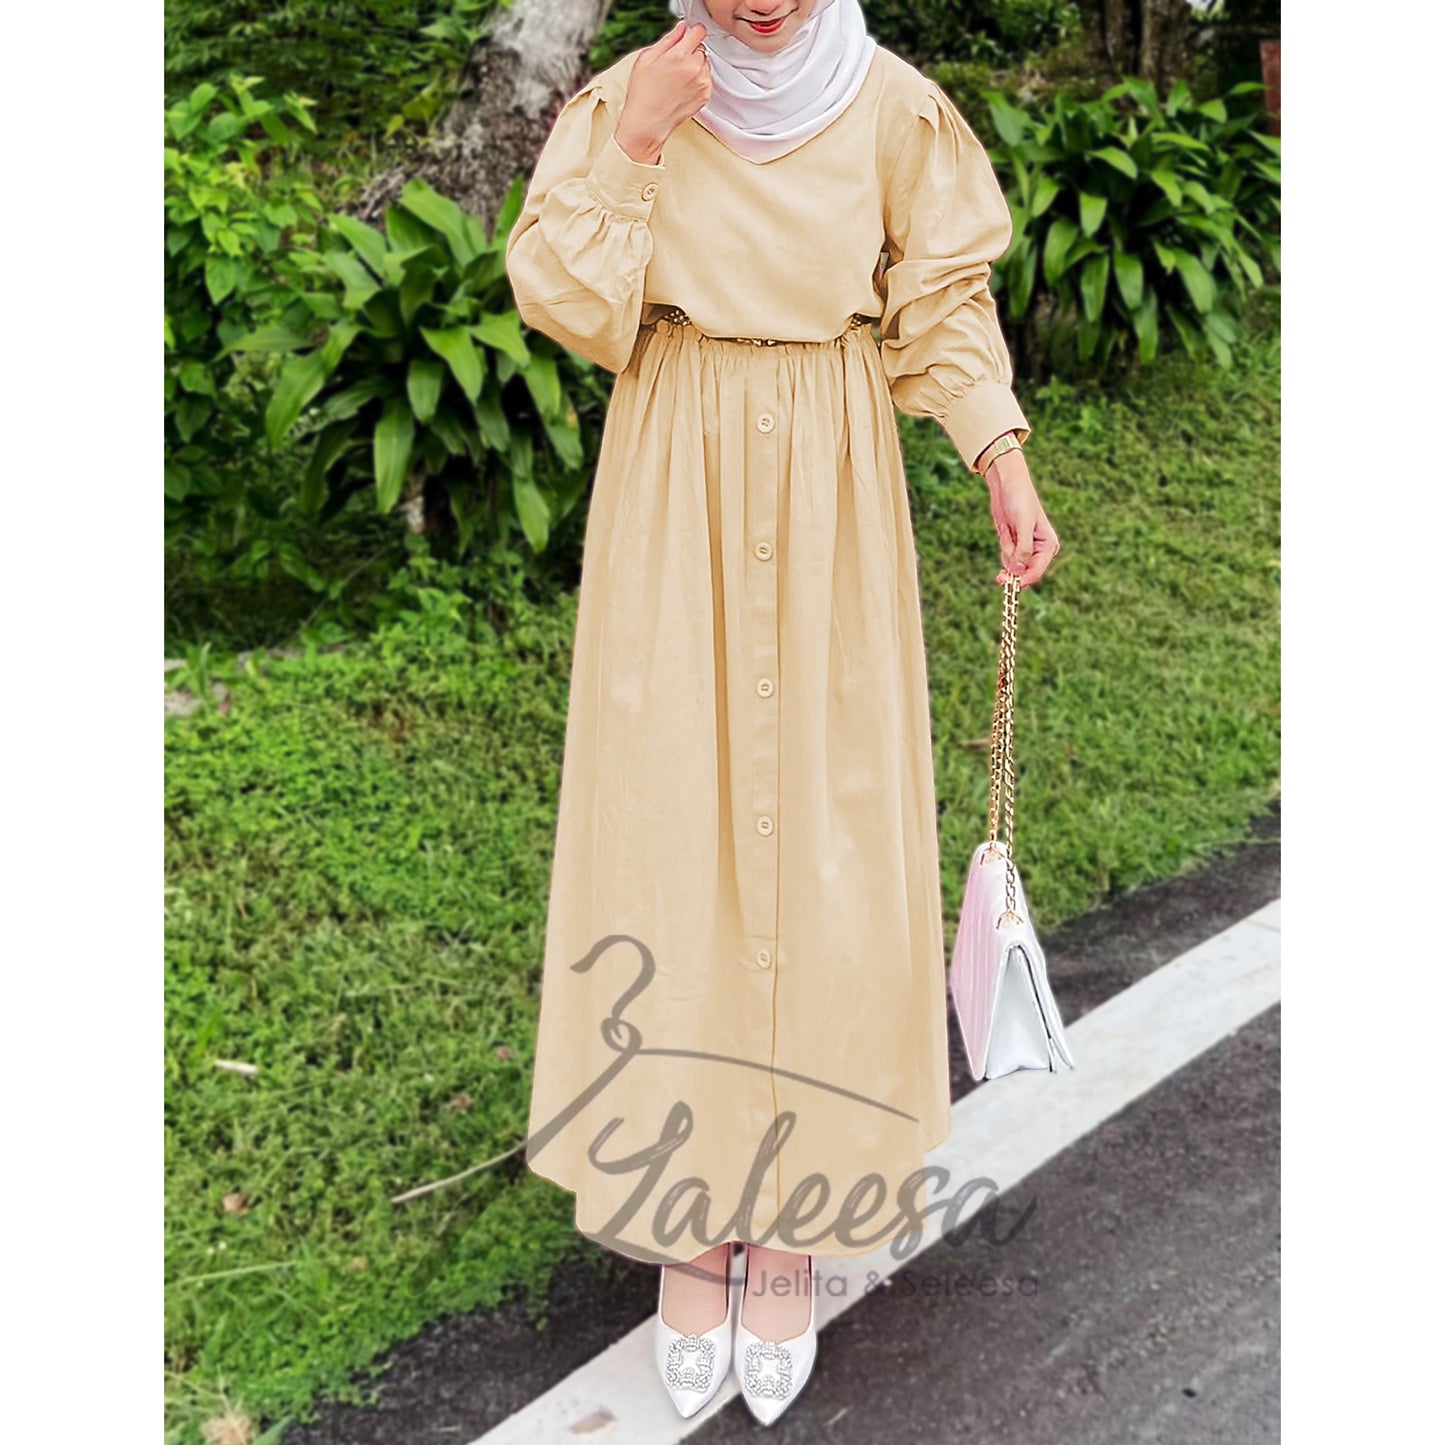 LALEESA LD270240 DRESS QAYSAR Balloon Sleeve Line Dress Muslimah Dress Women Dress Abaya Muslimah Jubah Baju Muslimah